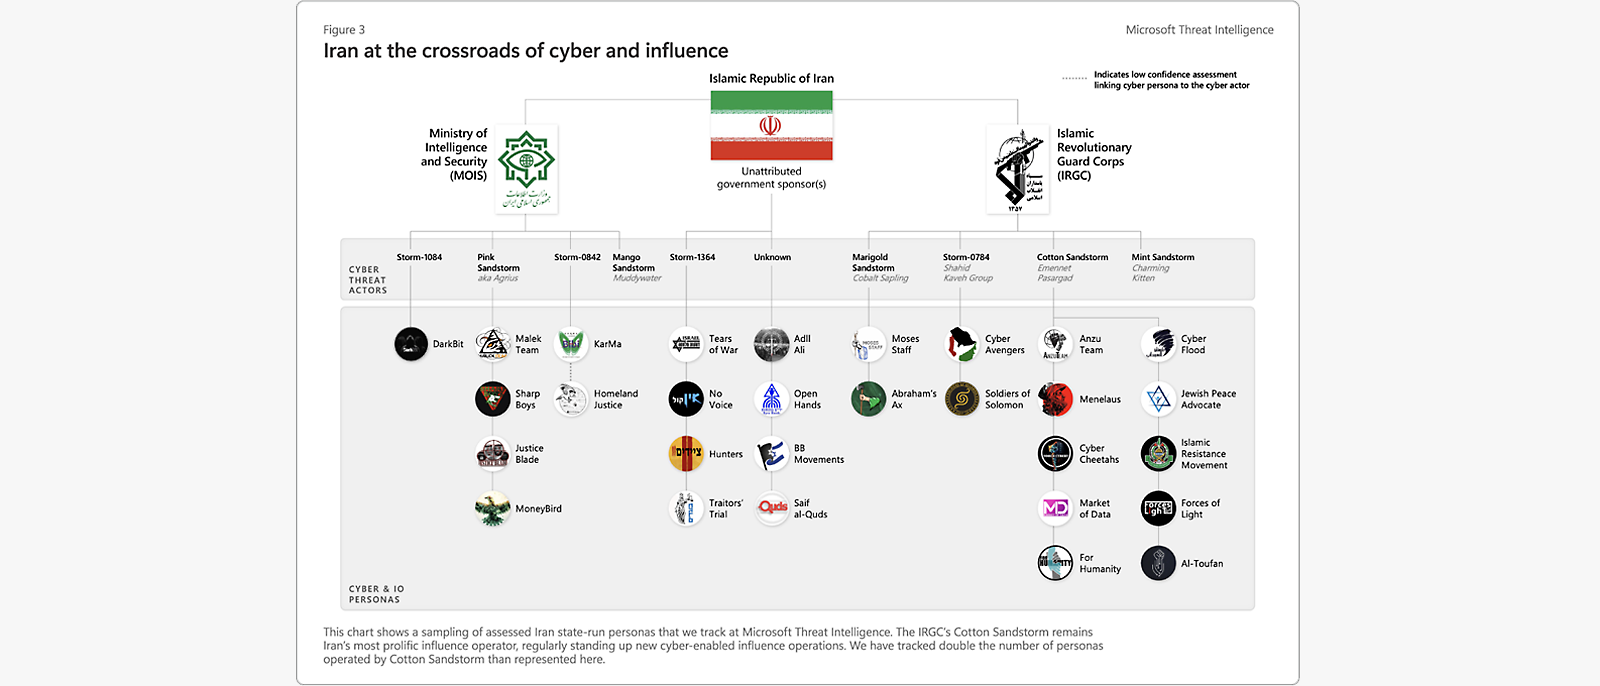 Attēls: Irānas kibersaites un ietekmes saites, kas ietver simbolus, draudu informāciju un Revolucionāro gvardu korpusu